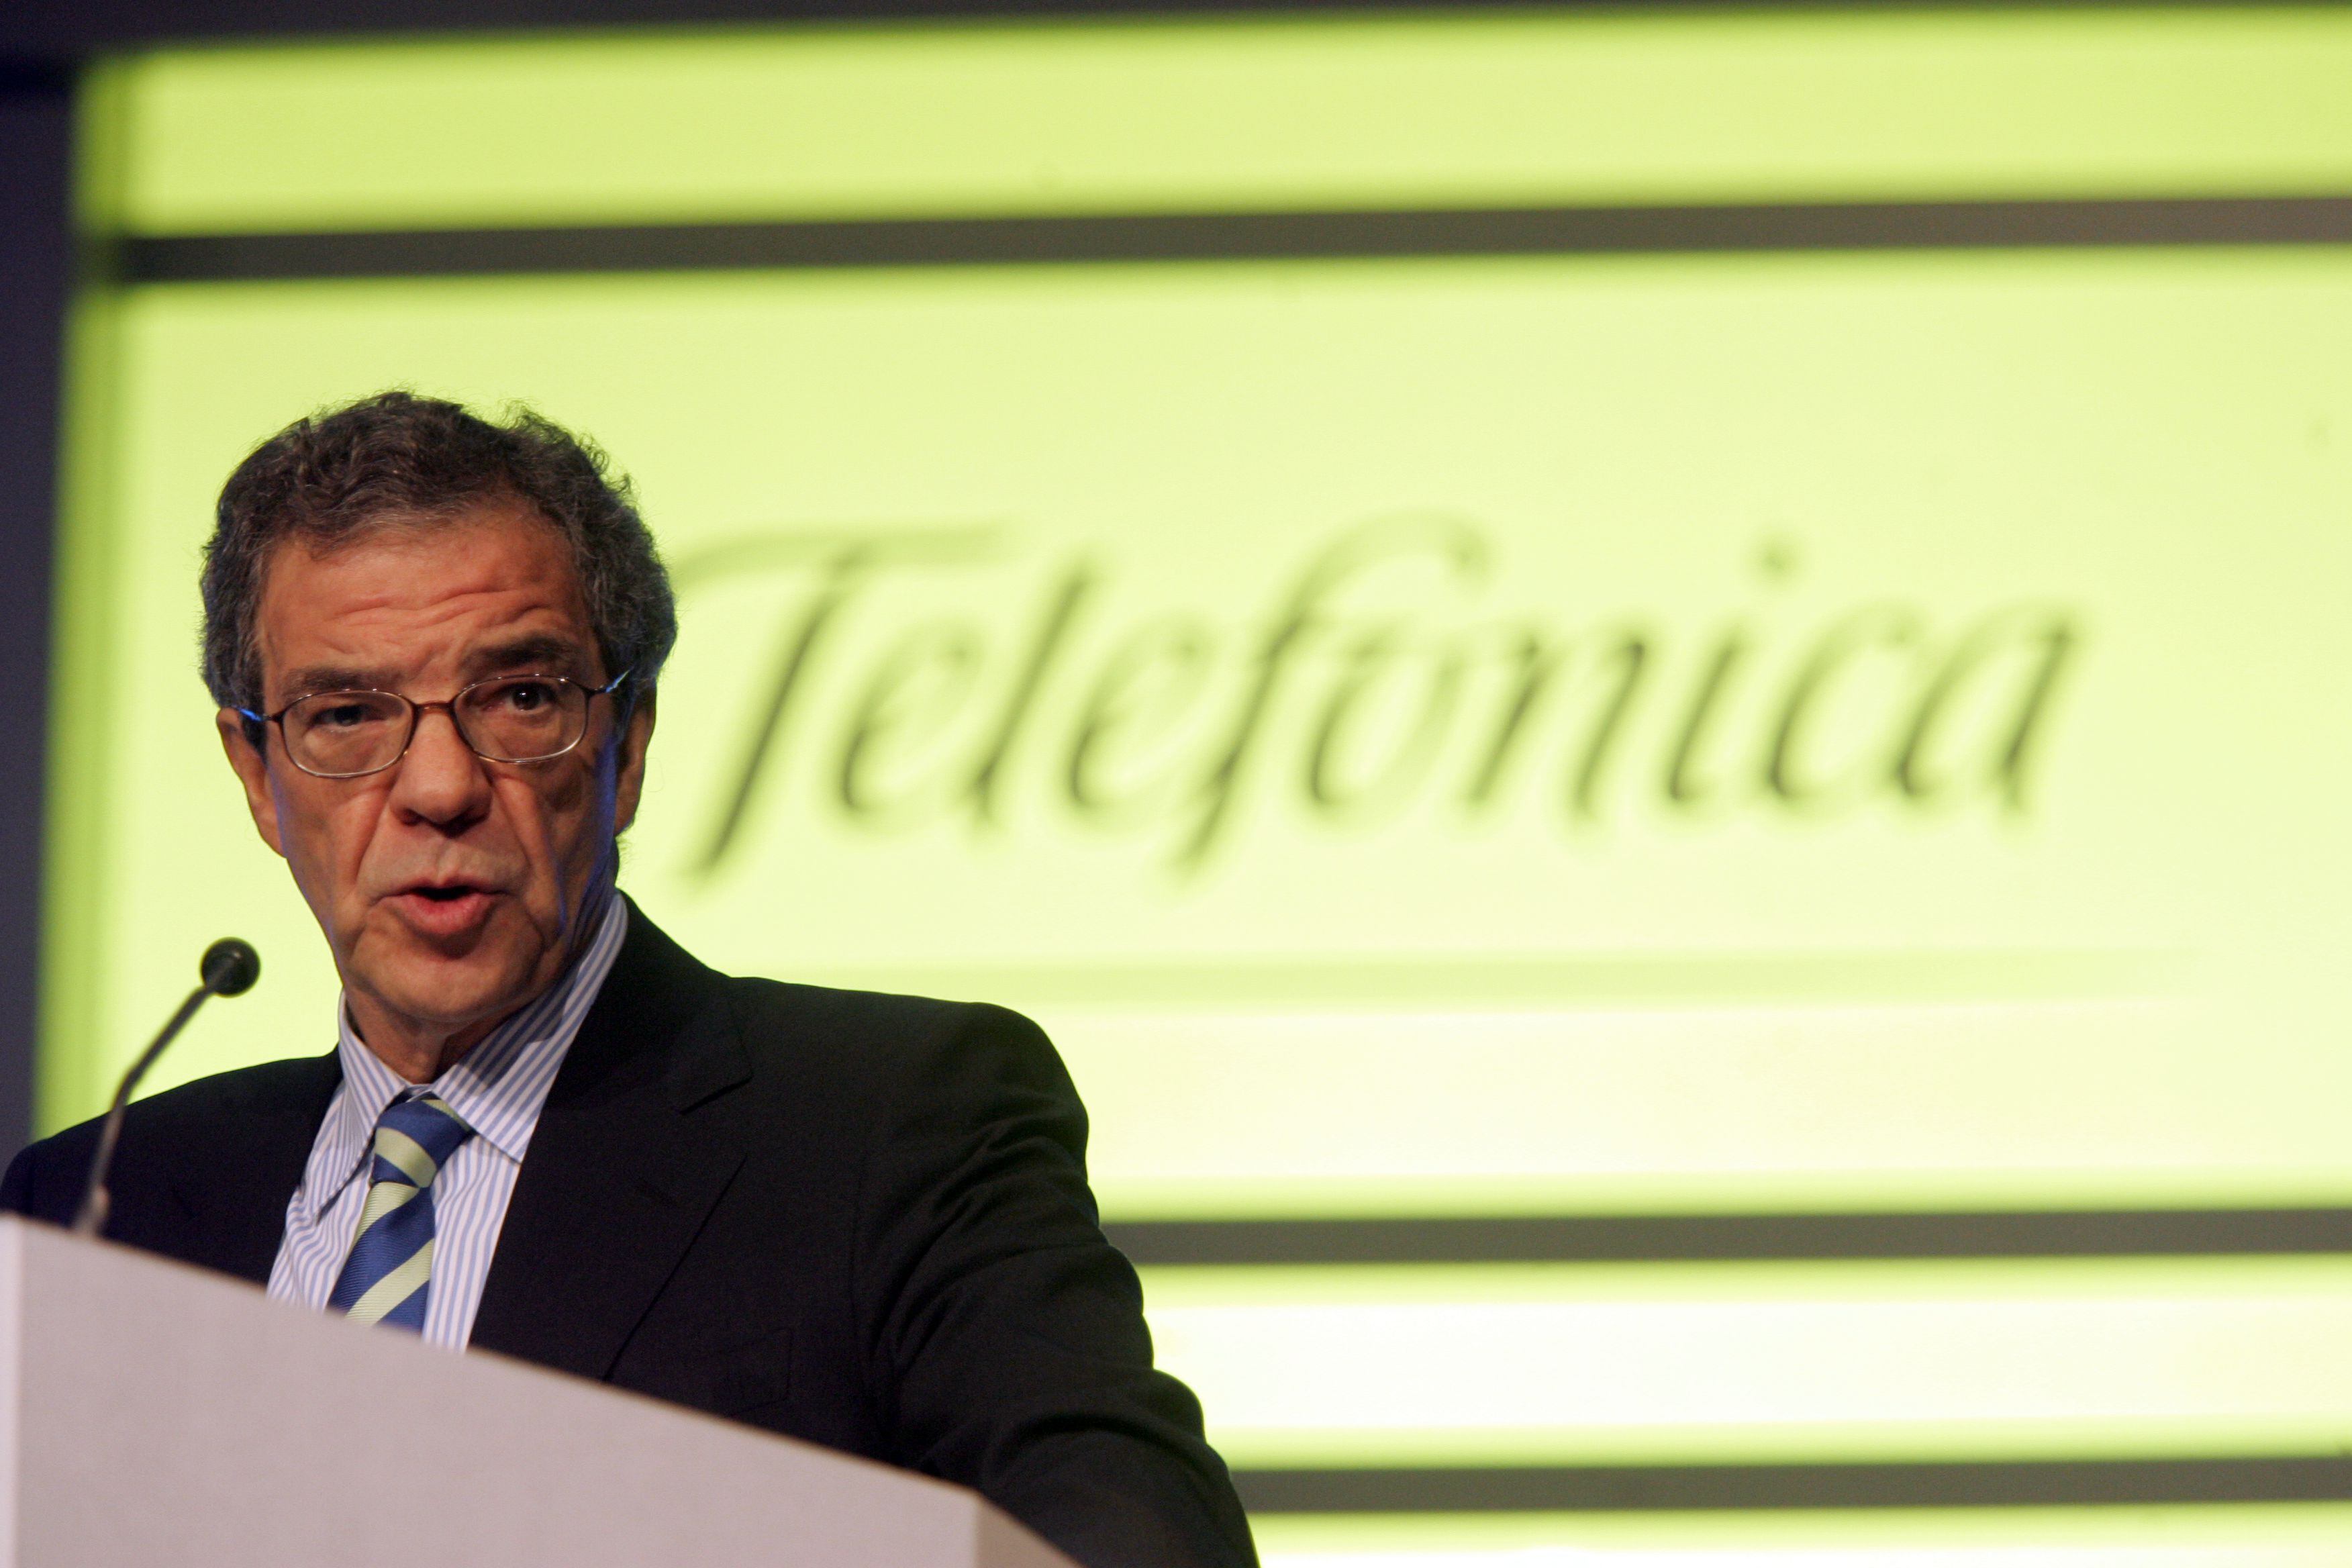  César Alierta, durante su intervención en la junta general de accionistas de Telefónica, en 2006.